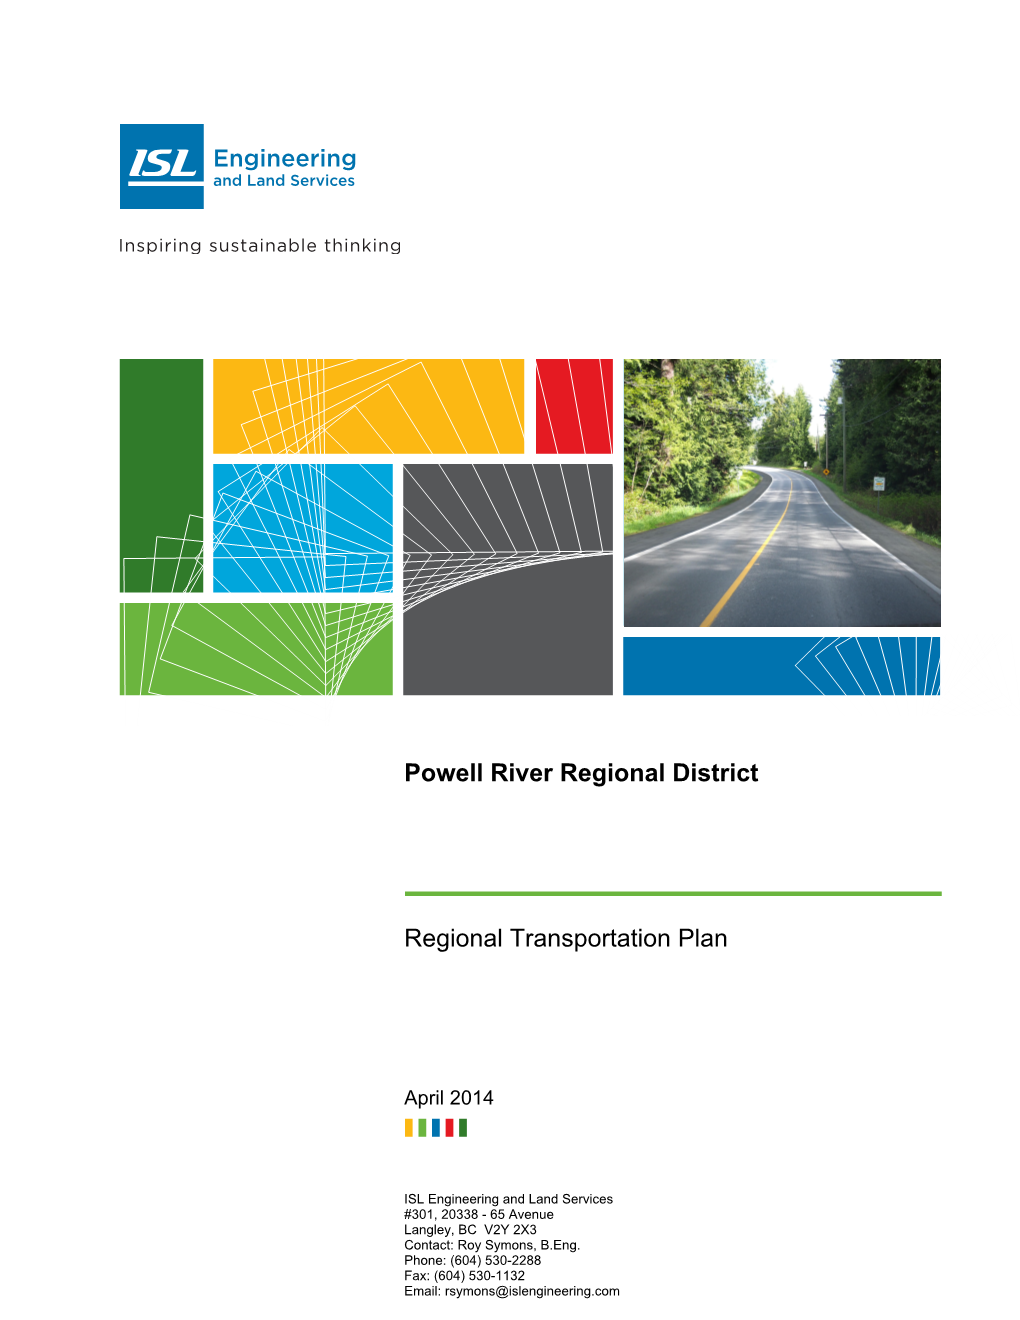 Regional Transportation Plan 2014